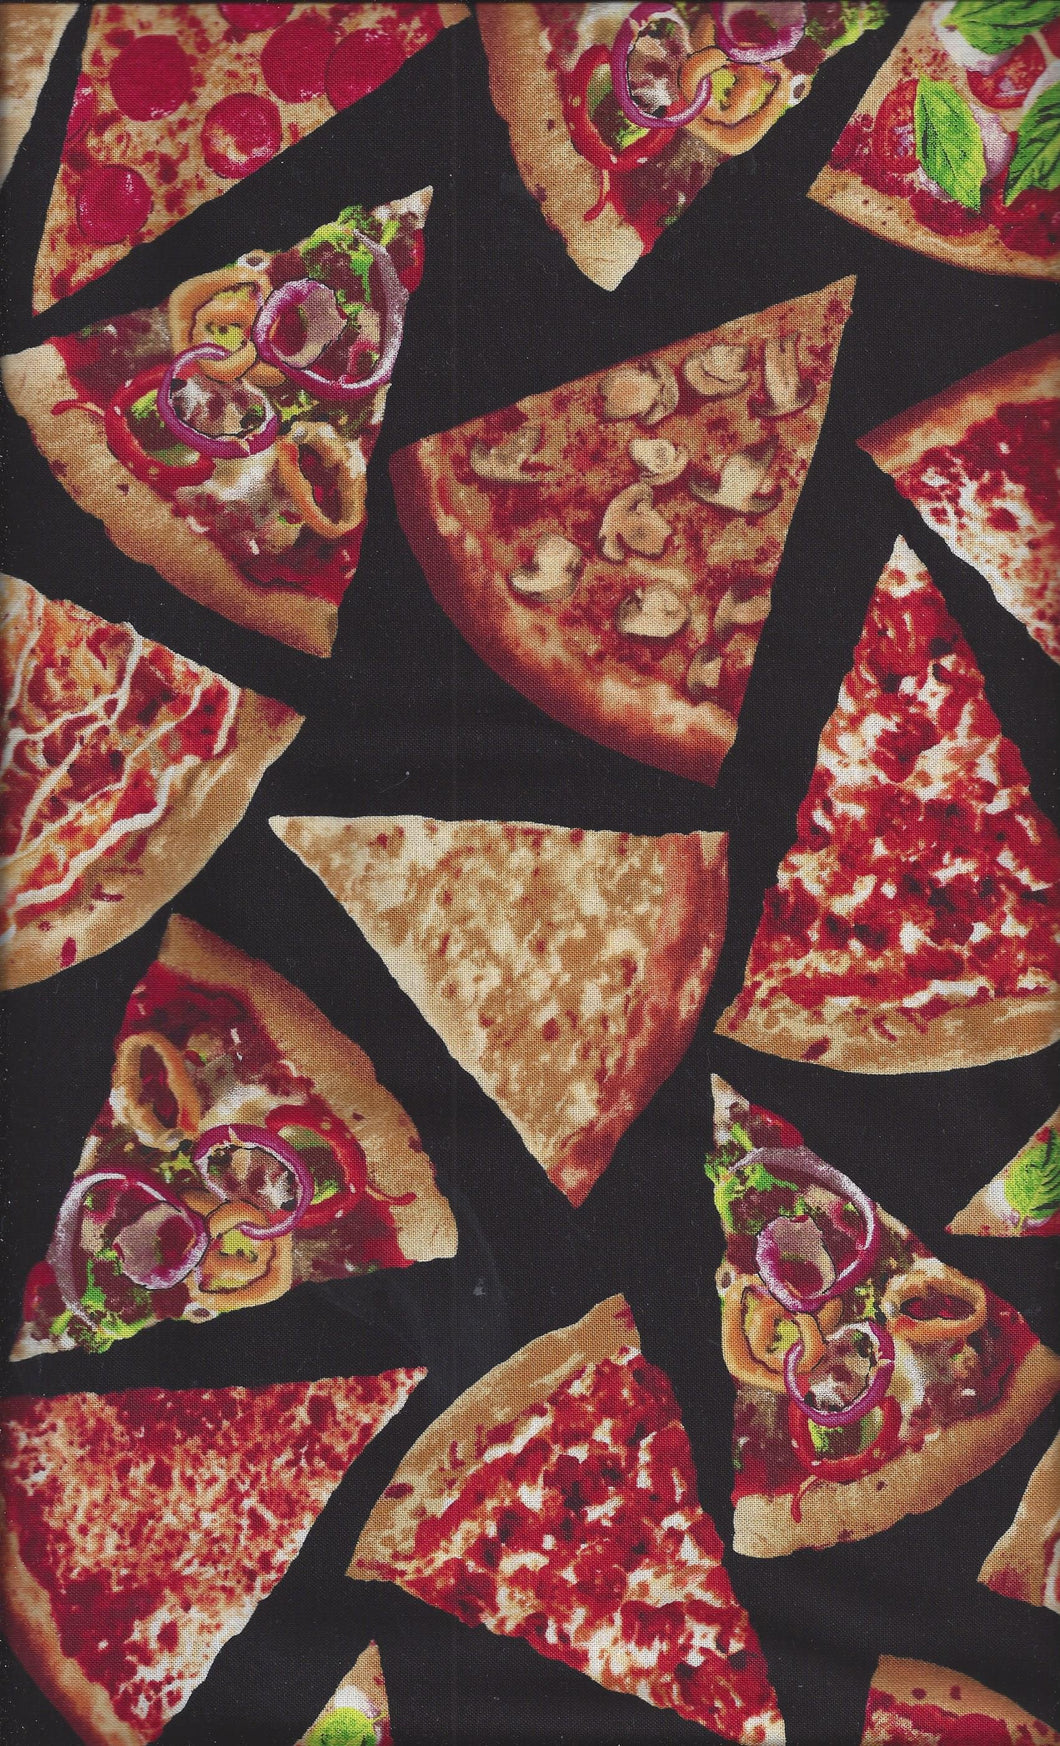 Food Pizza Slices ed533